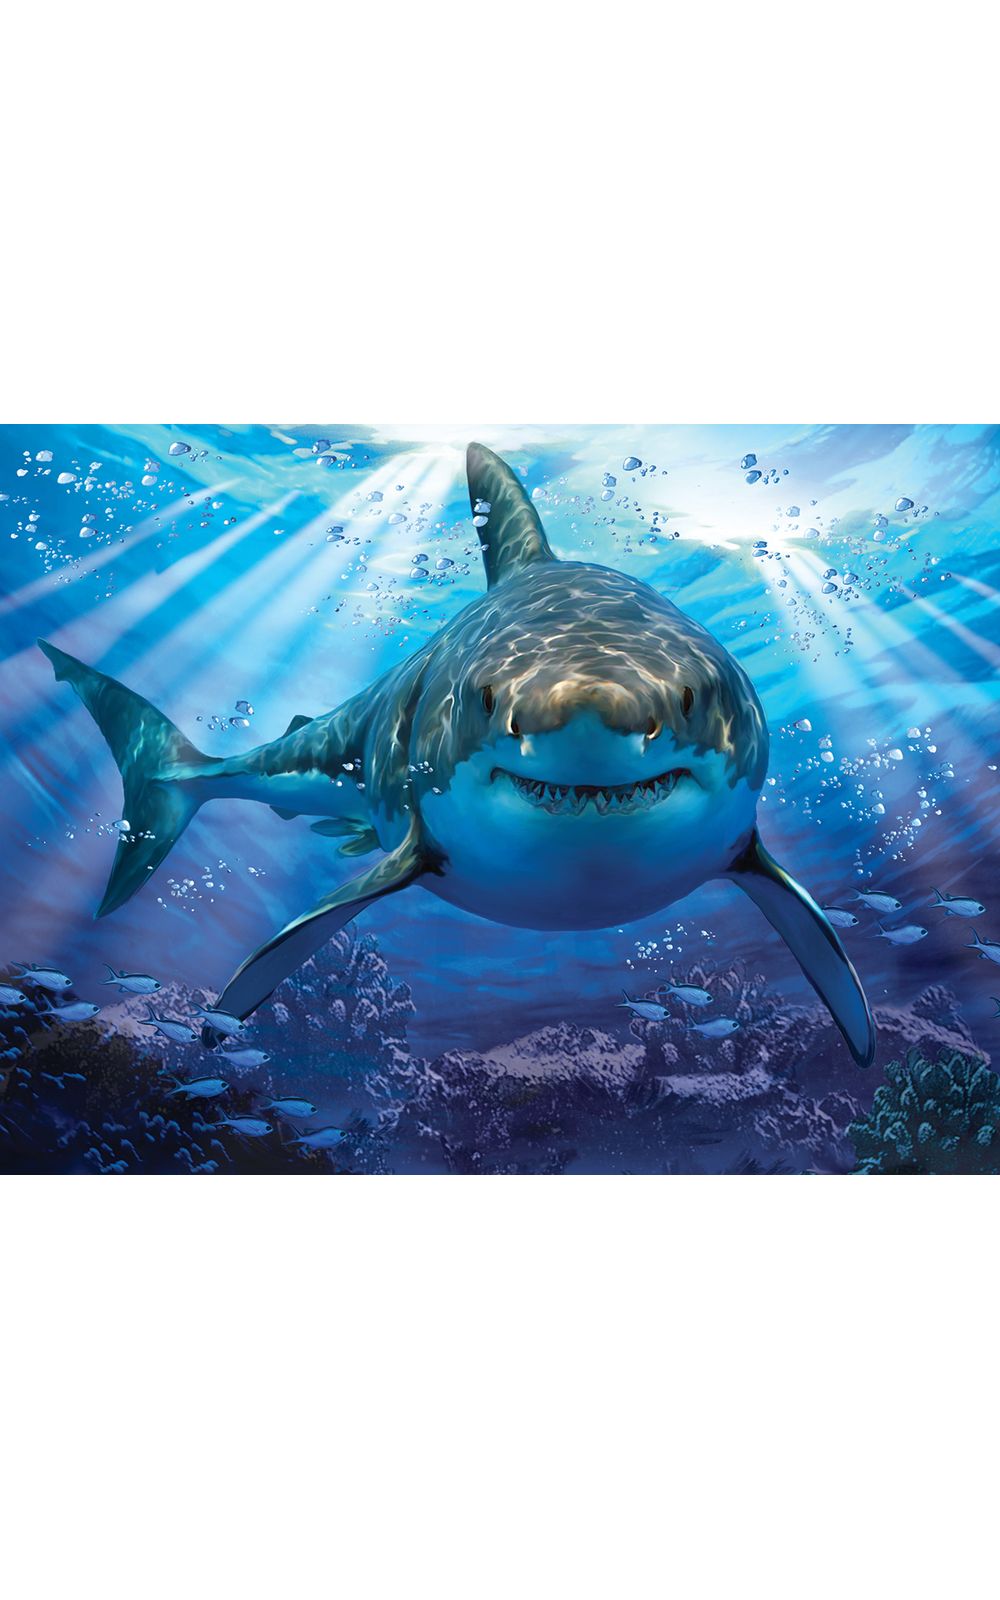 Foto 2 - Quebra Cabeça Super 3D Modelo Tubarão com 500 Peças Multikids - BR1054